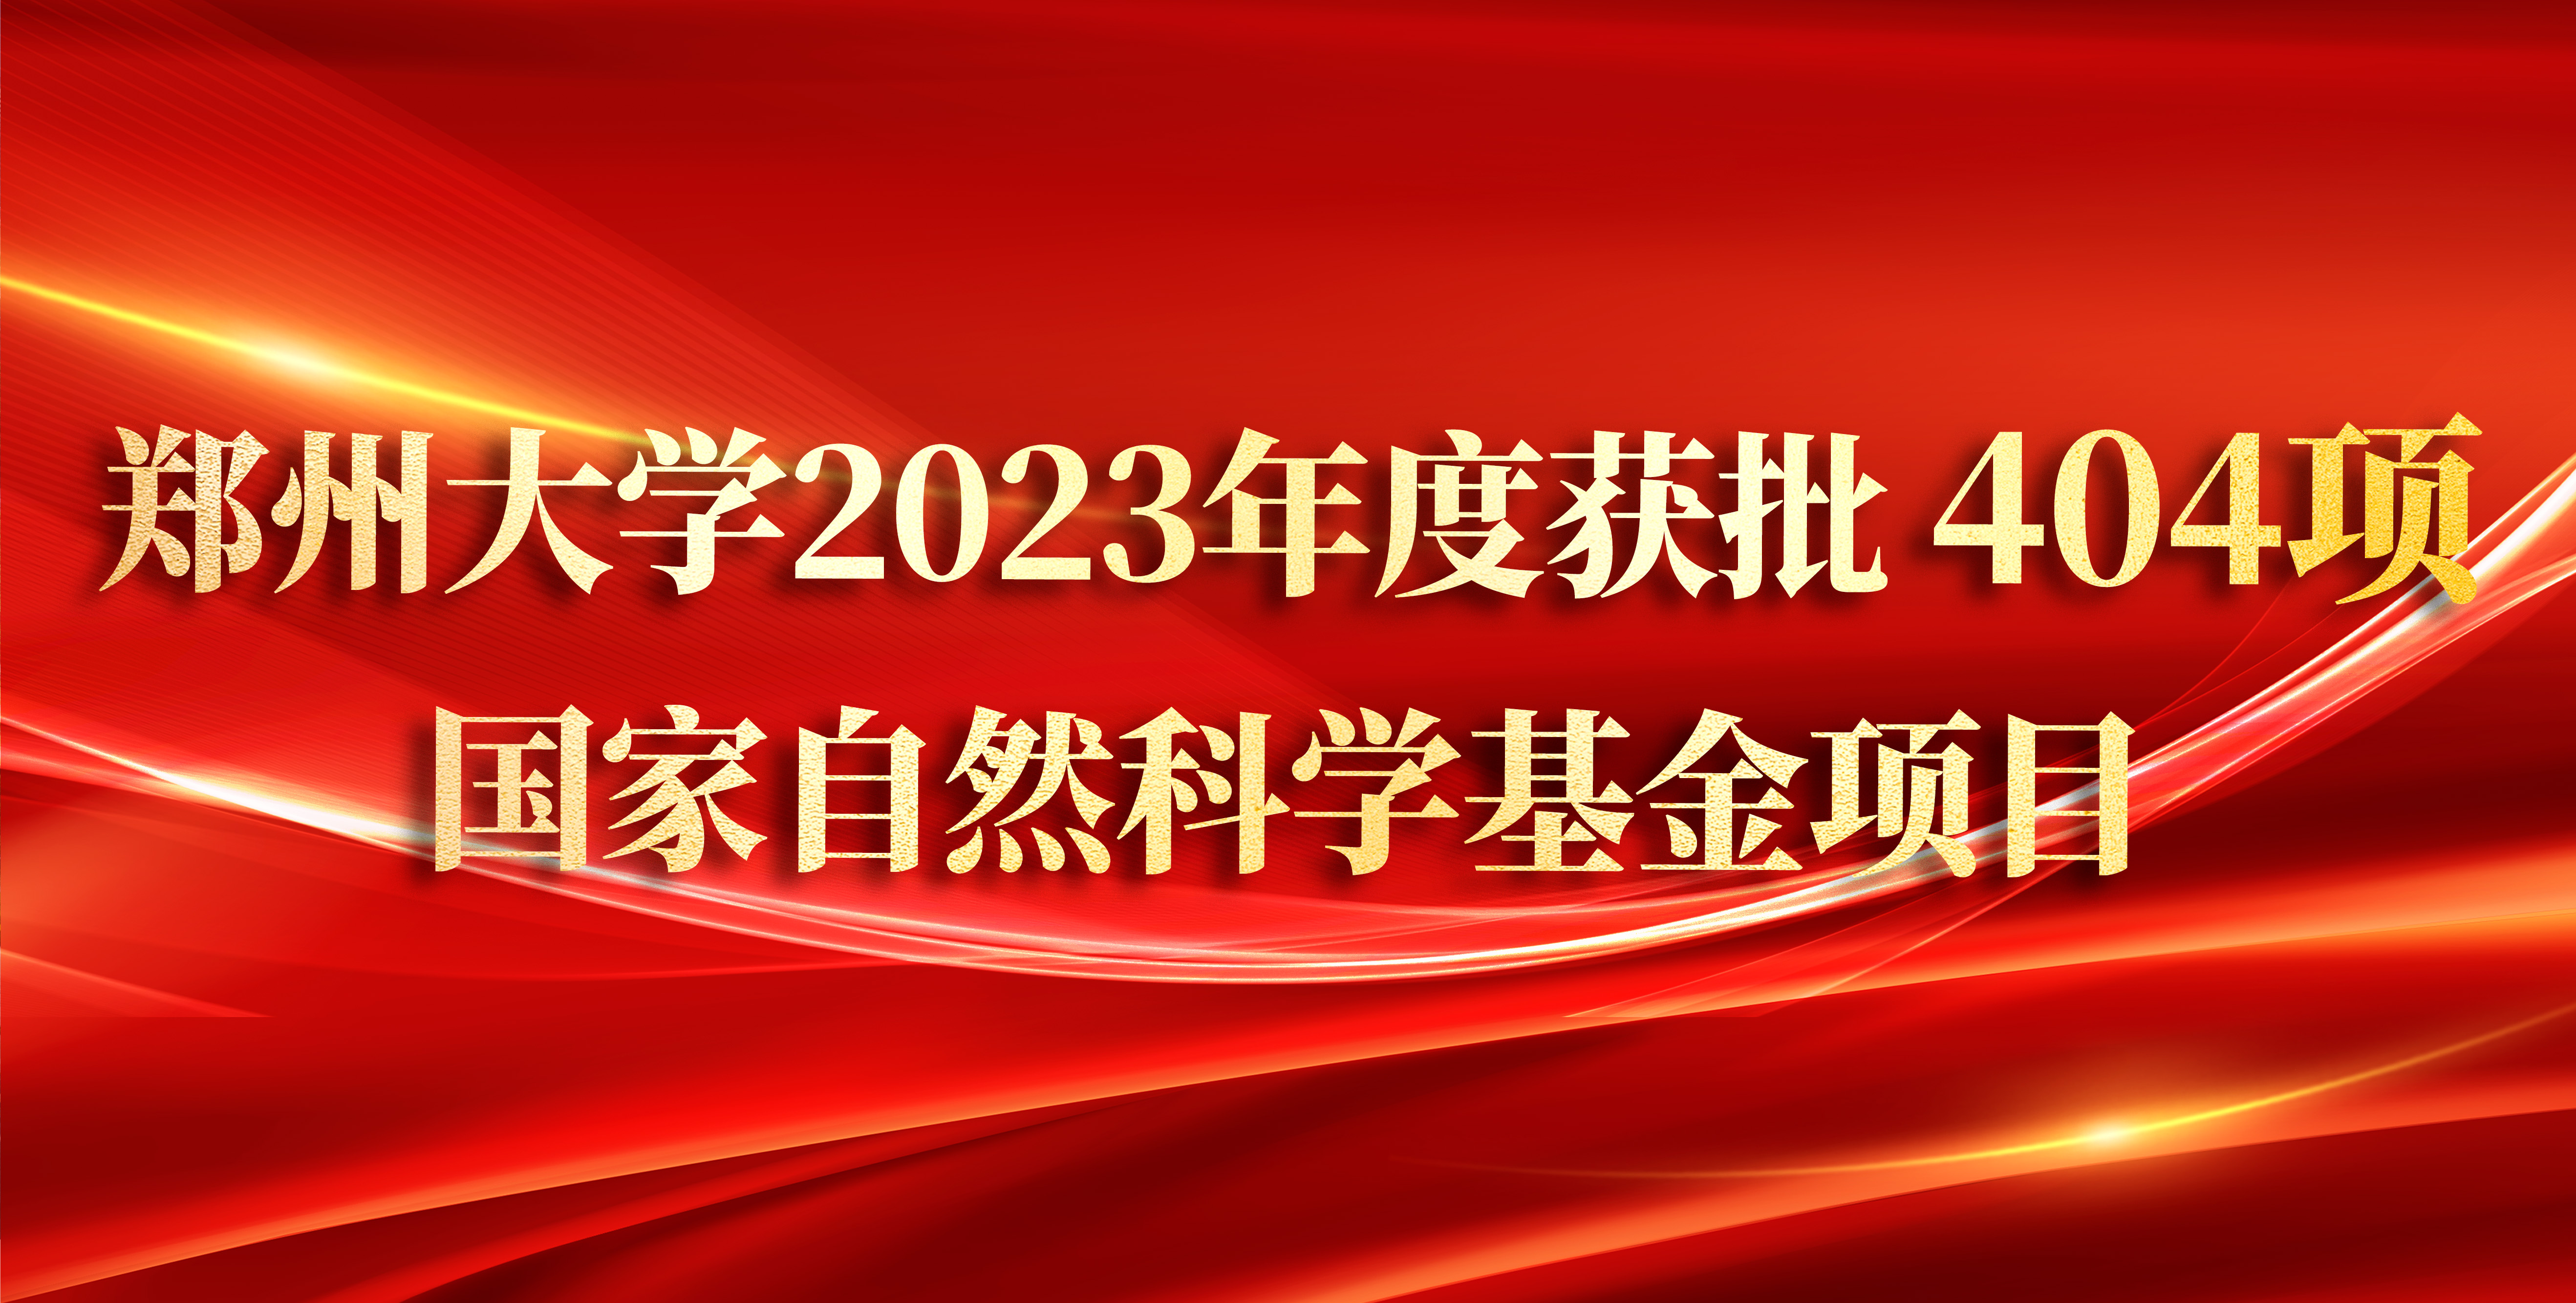 郑州大学2023年度获批404项国家自然科学基金项目